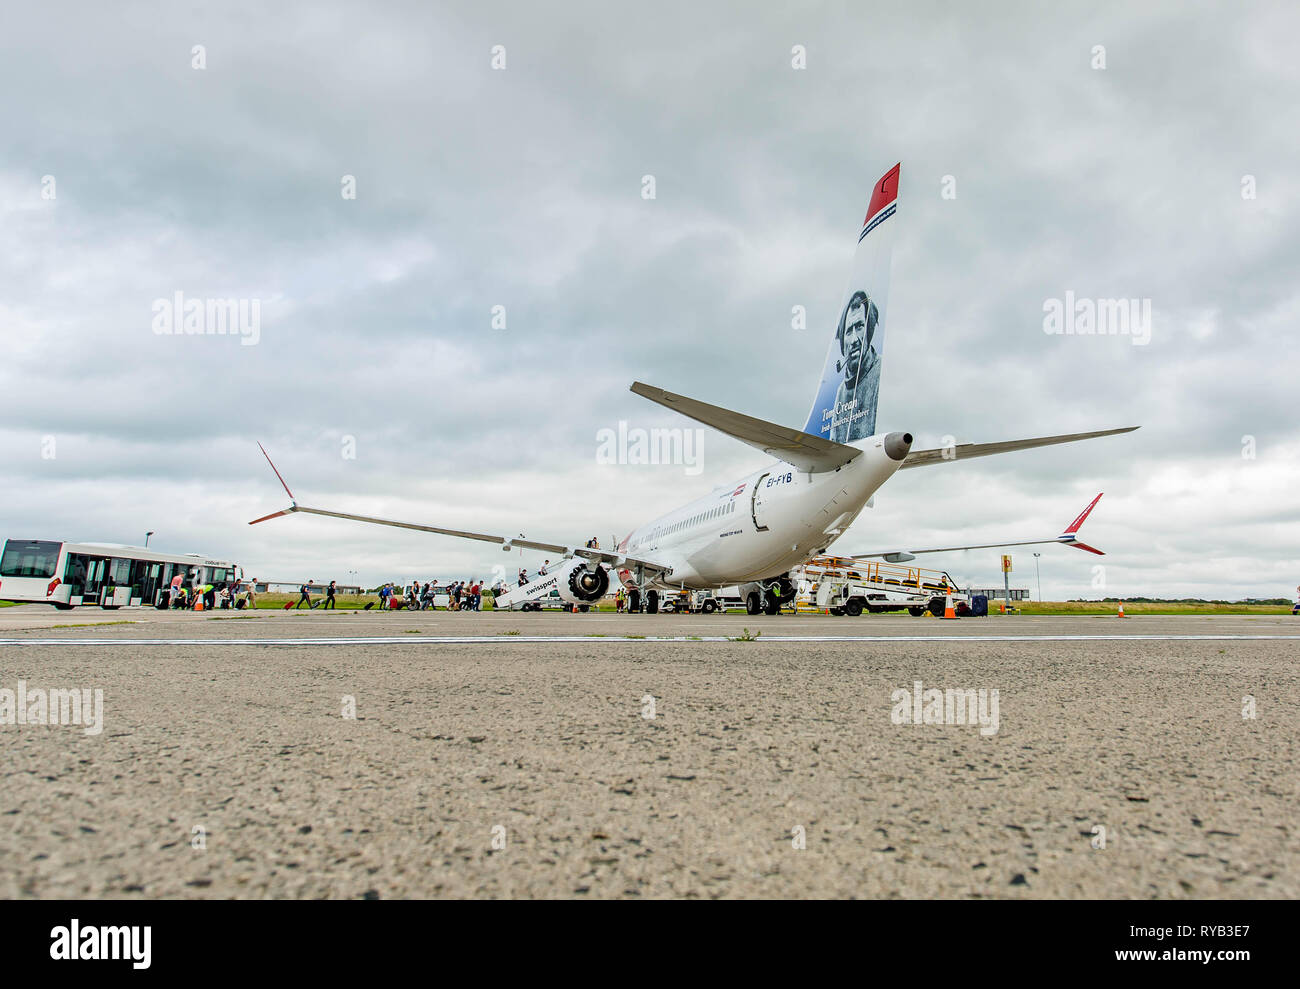 Norwegian Air Max 737-8 Foto de stock